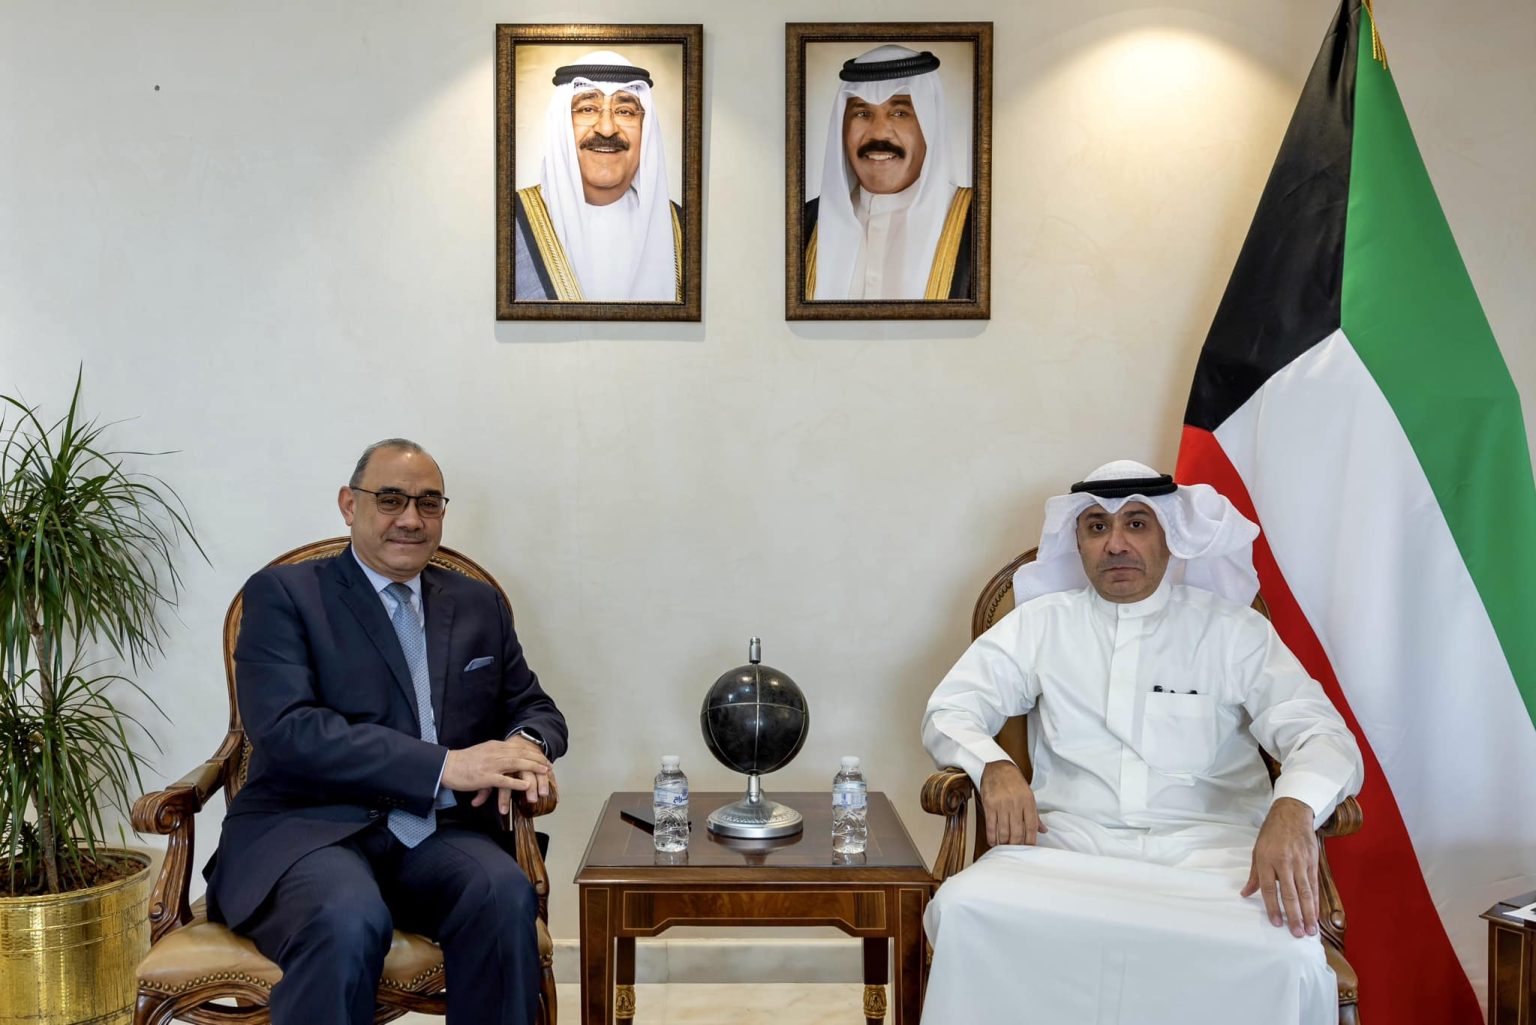 الكويت تسلم سفير العراق مذكرة احتجاج بشأن اتفاقية خور عبد الله